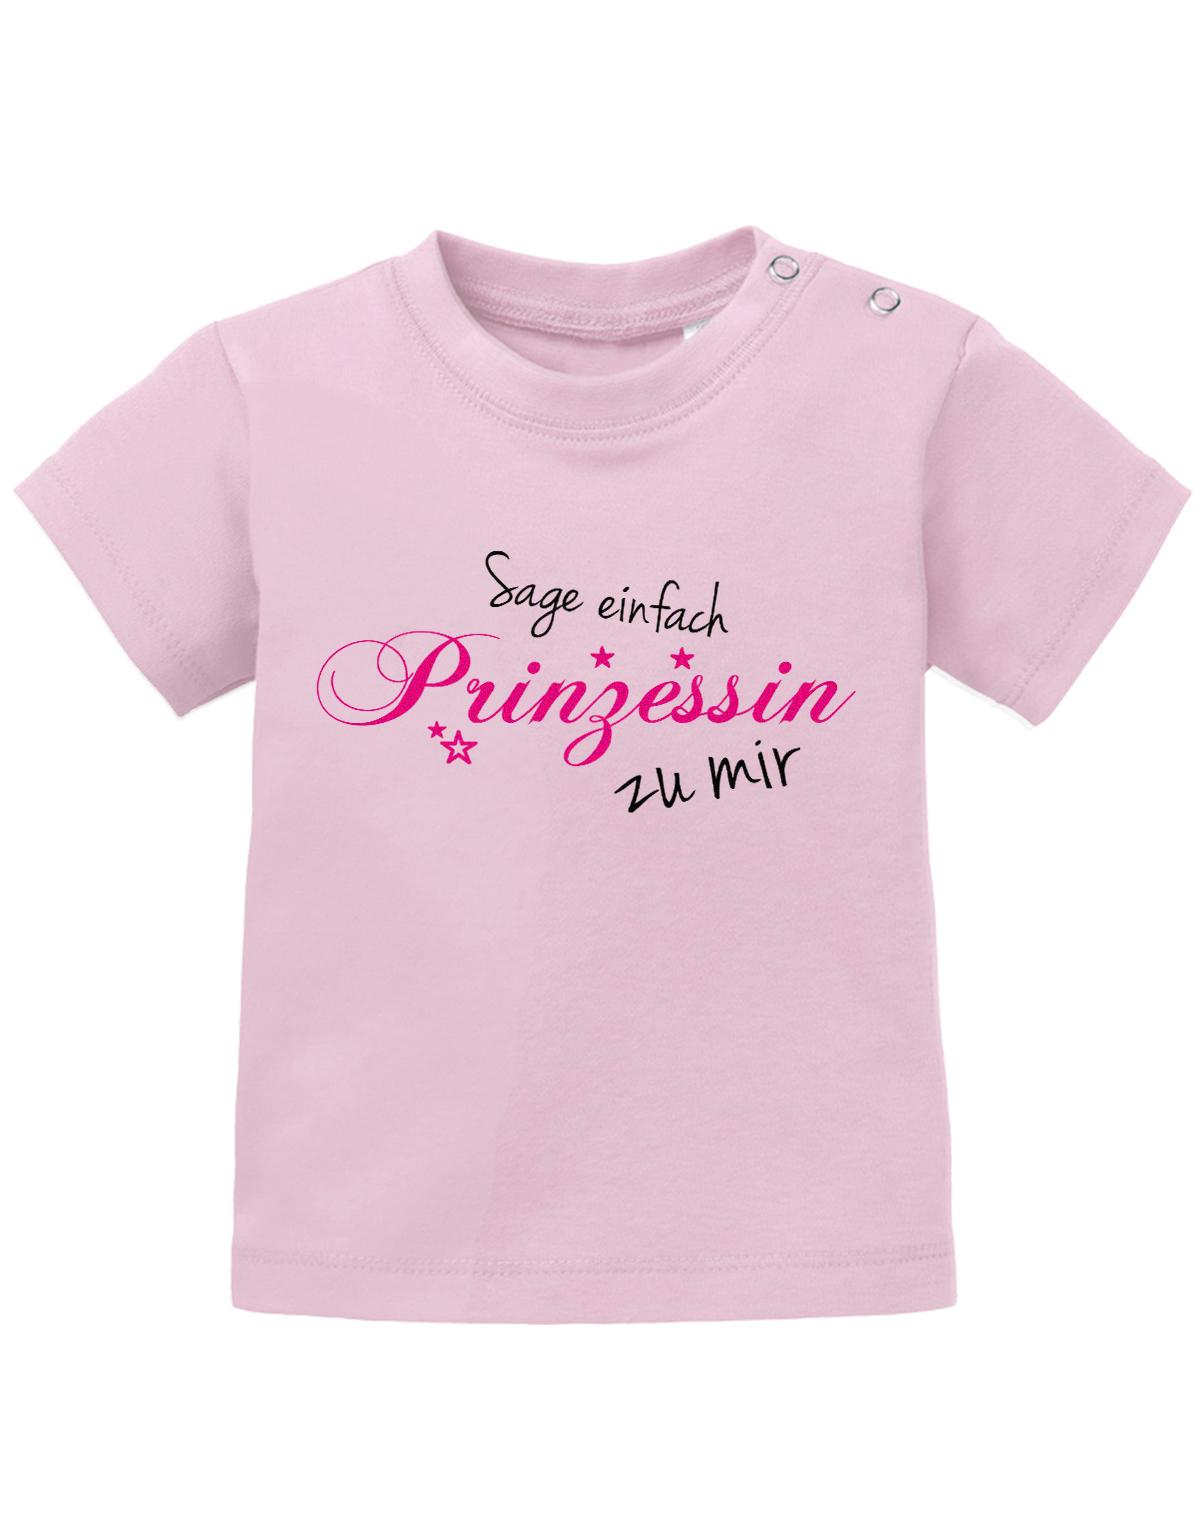 Lustiges Sprüche Baby Shirt Sage einfach Prinzessin zu mir. Rosa